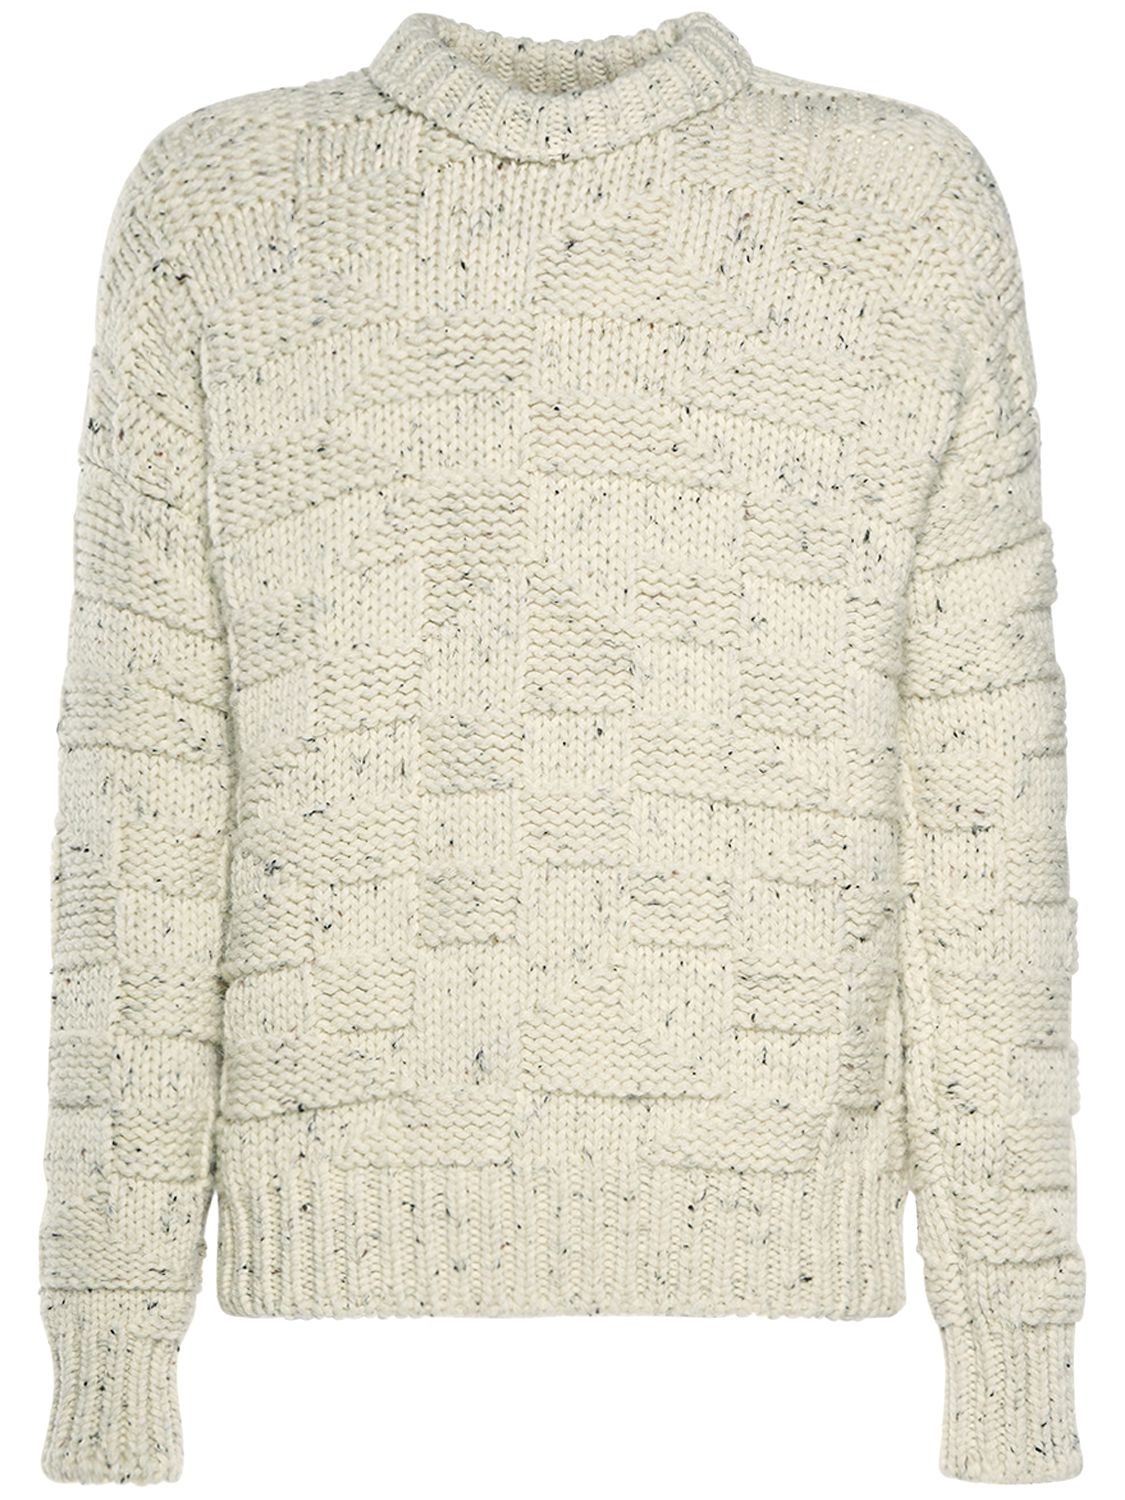 Intreccio Graphic Shetland Wool Sweater